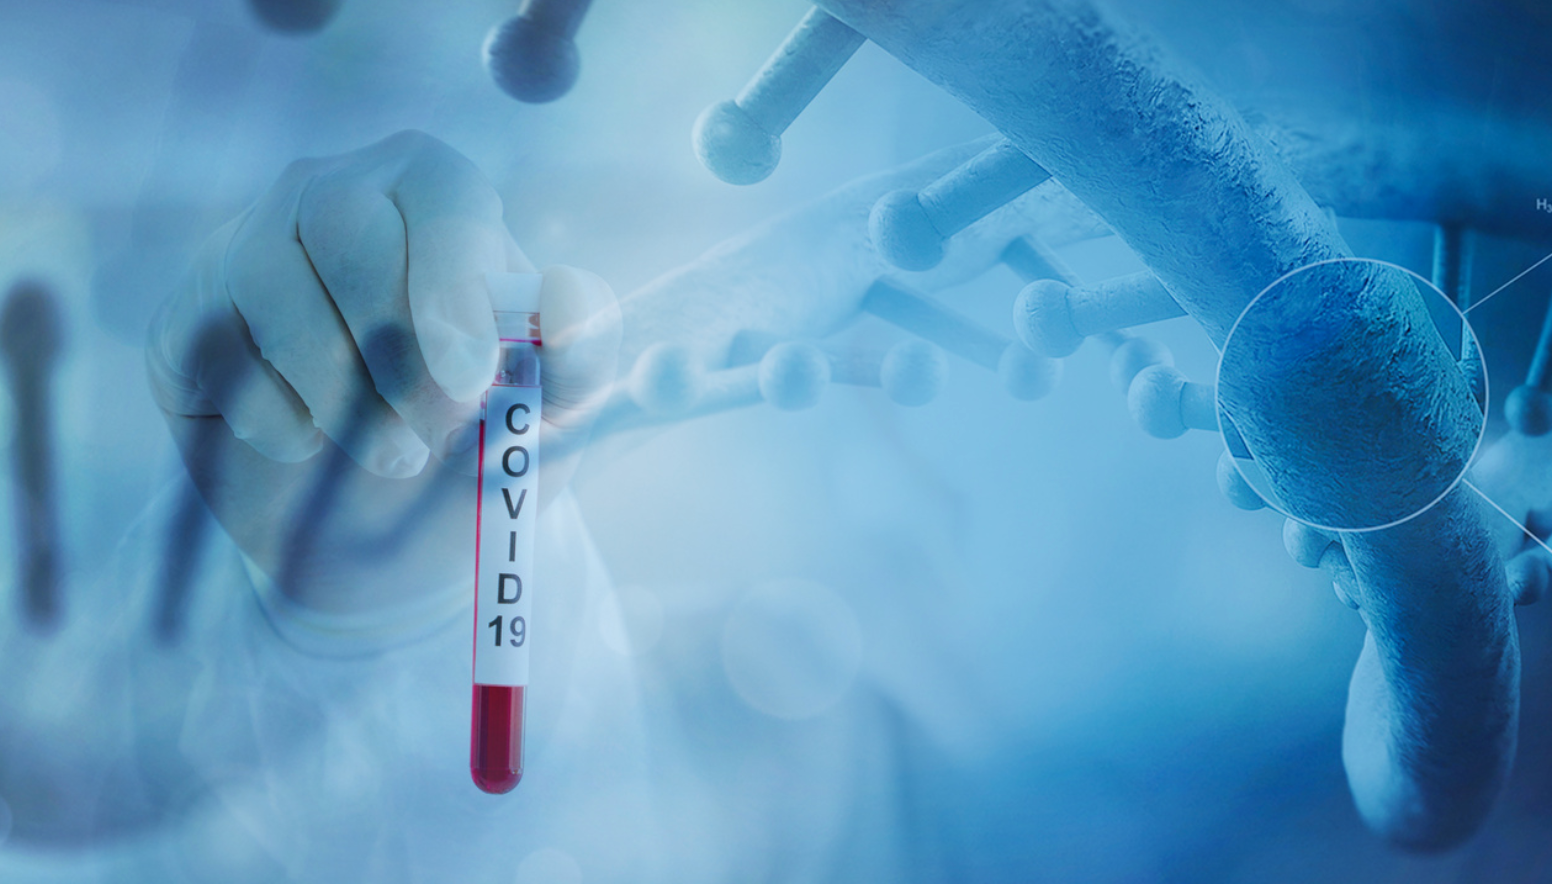 Researchers Accelerate Development of COVID-19 Diagnostic Test